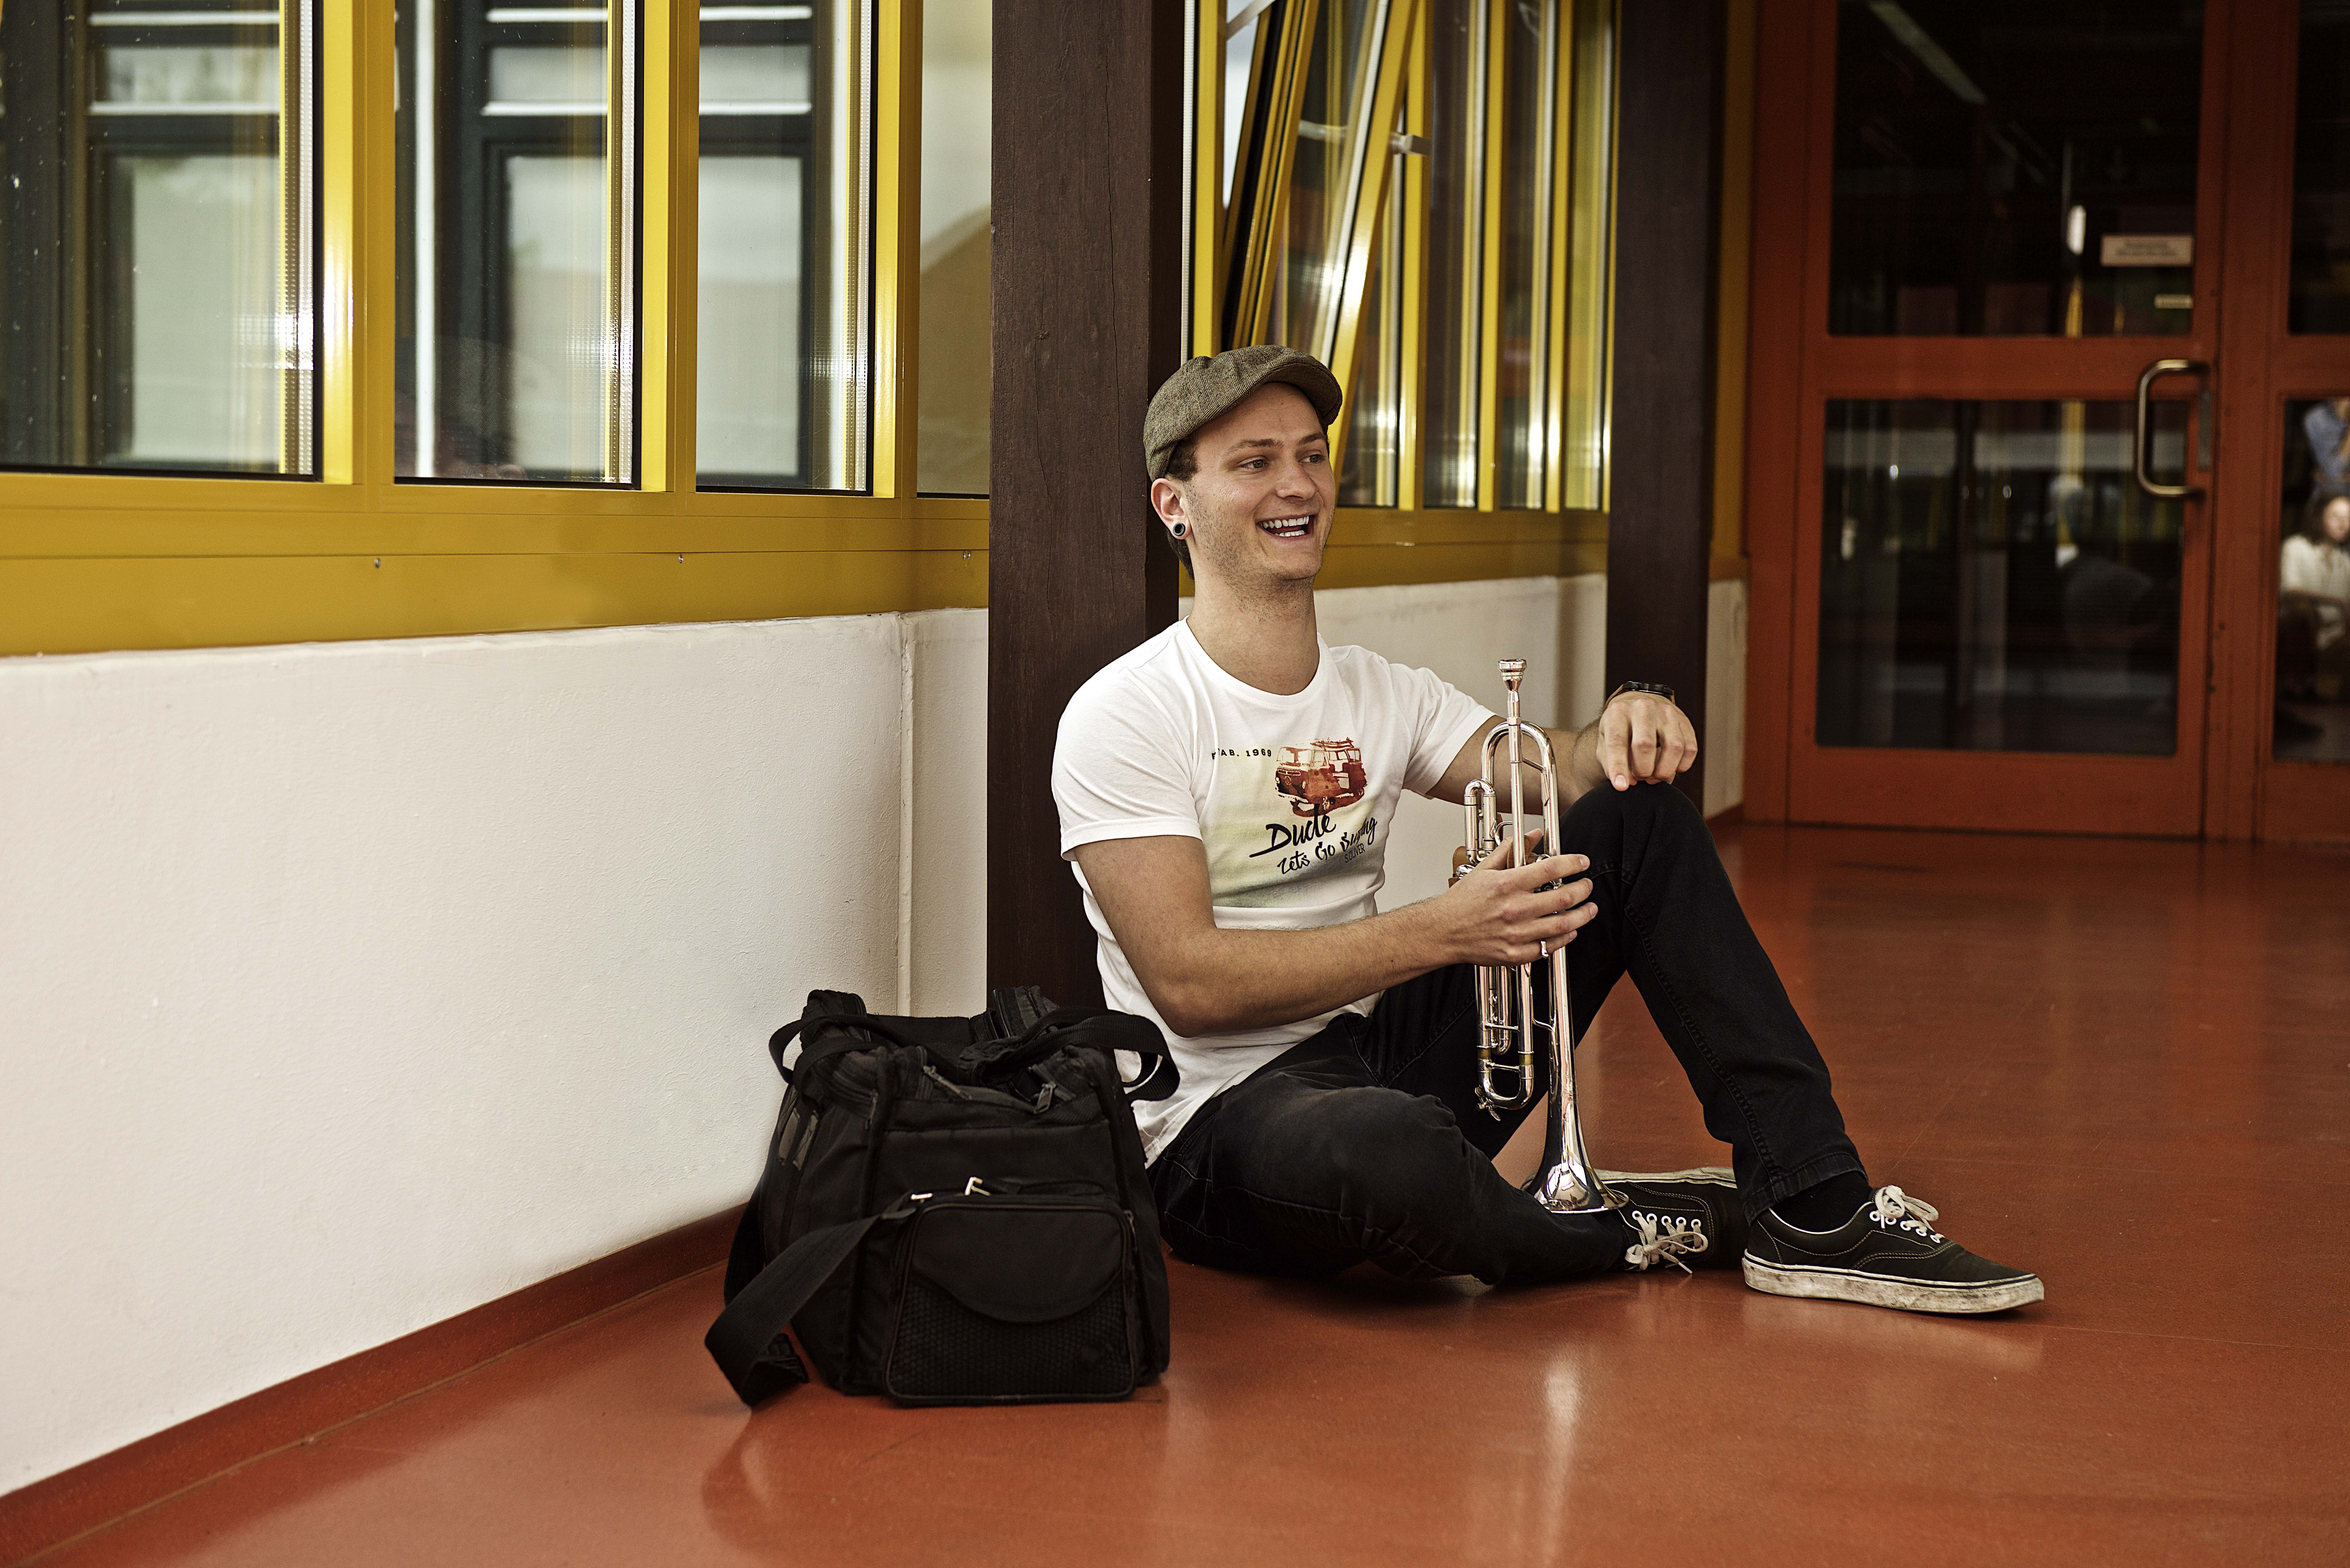 Ein Student mit Instrument, unterwegs in der Universität